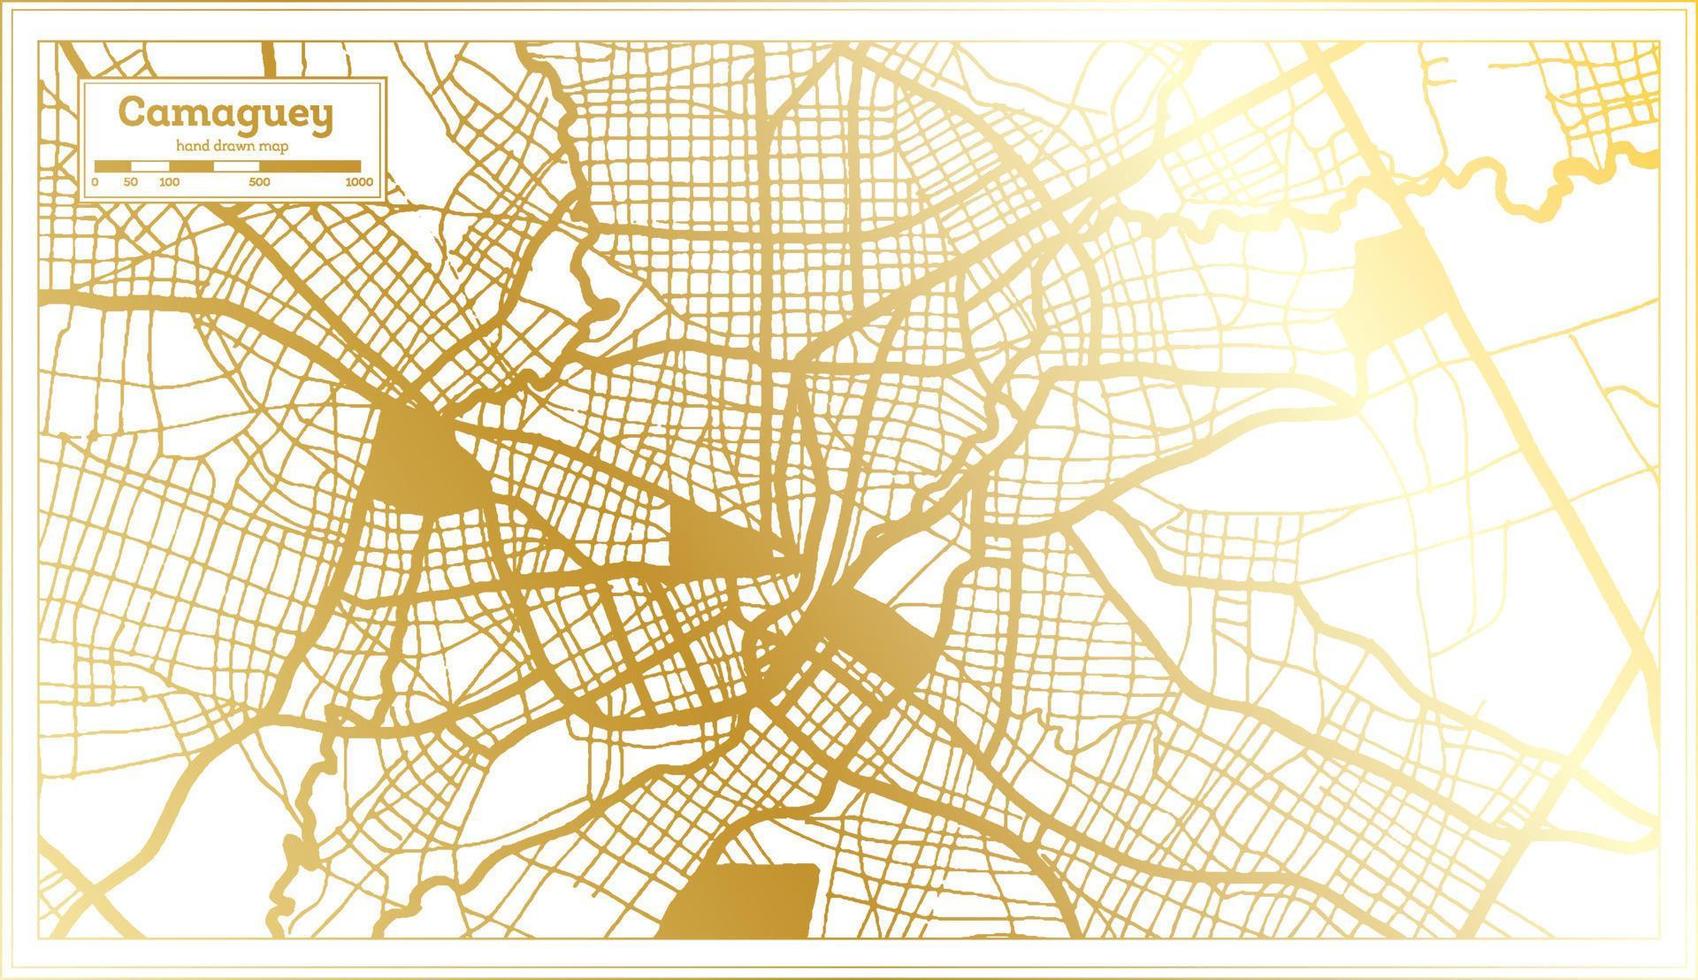 plan de la ville de camaguey cuba dans un style rétro de couleur dorée. carte muette. vecteur